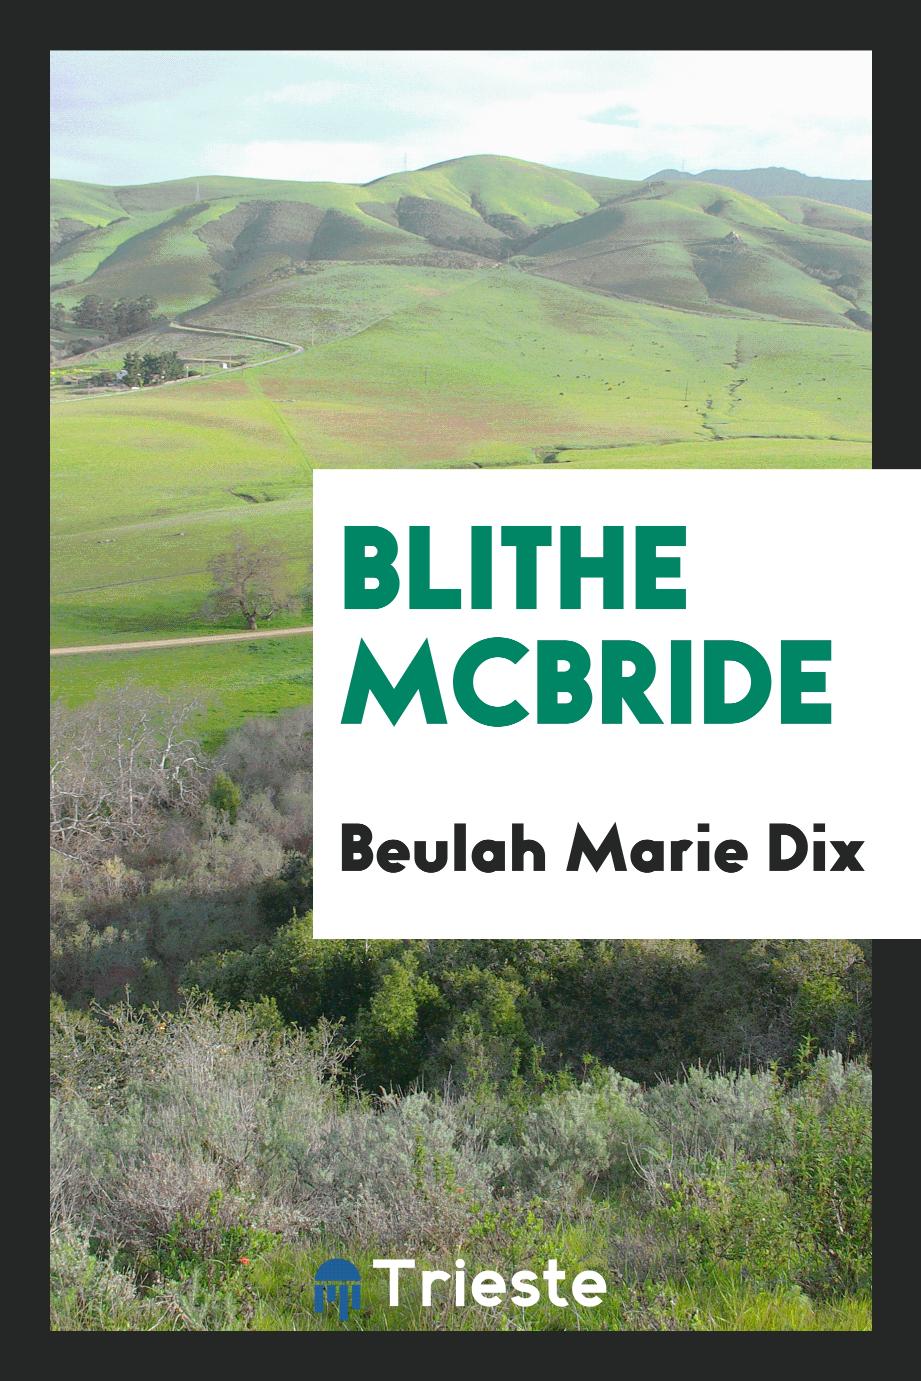 Blithe McBride